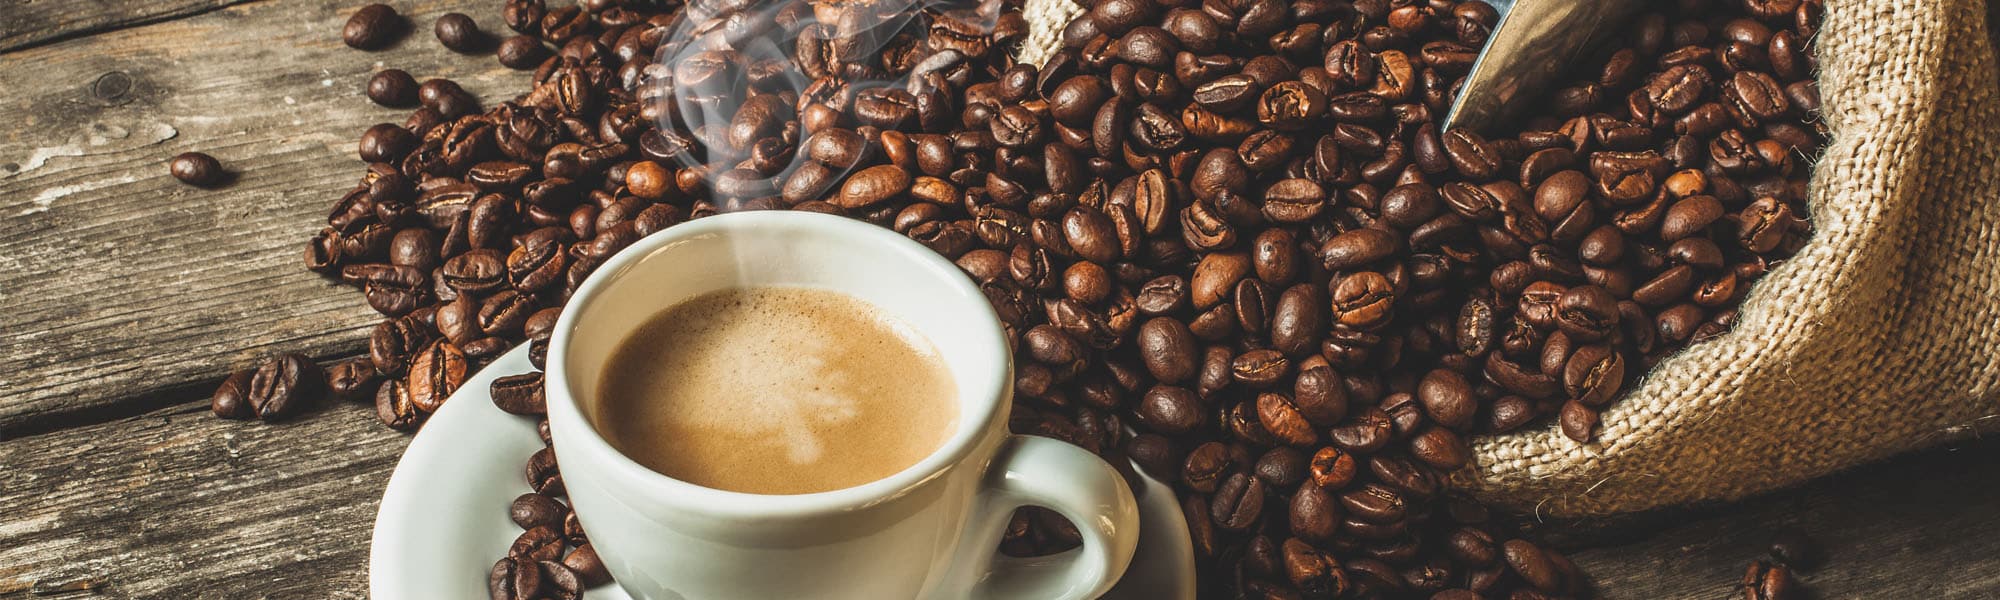 Welche Wirkung von Kaffee ist wahr und welche nicht? - Coffeemont.de